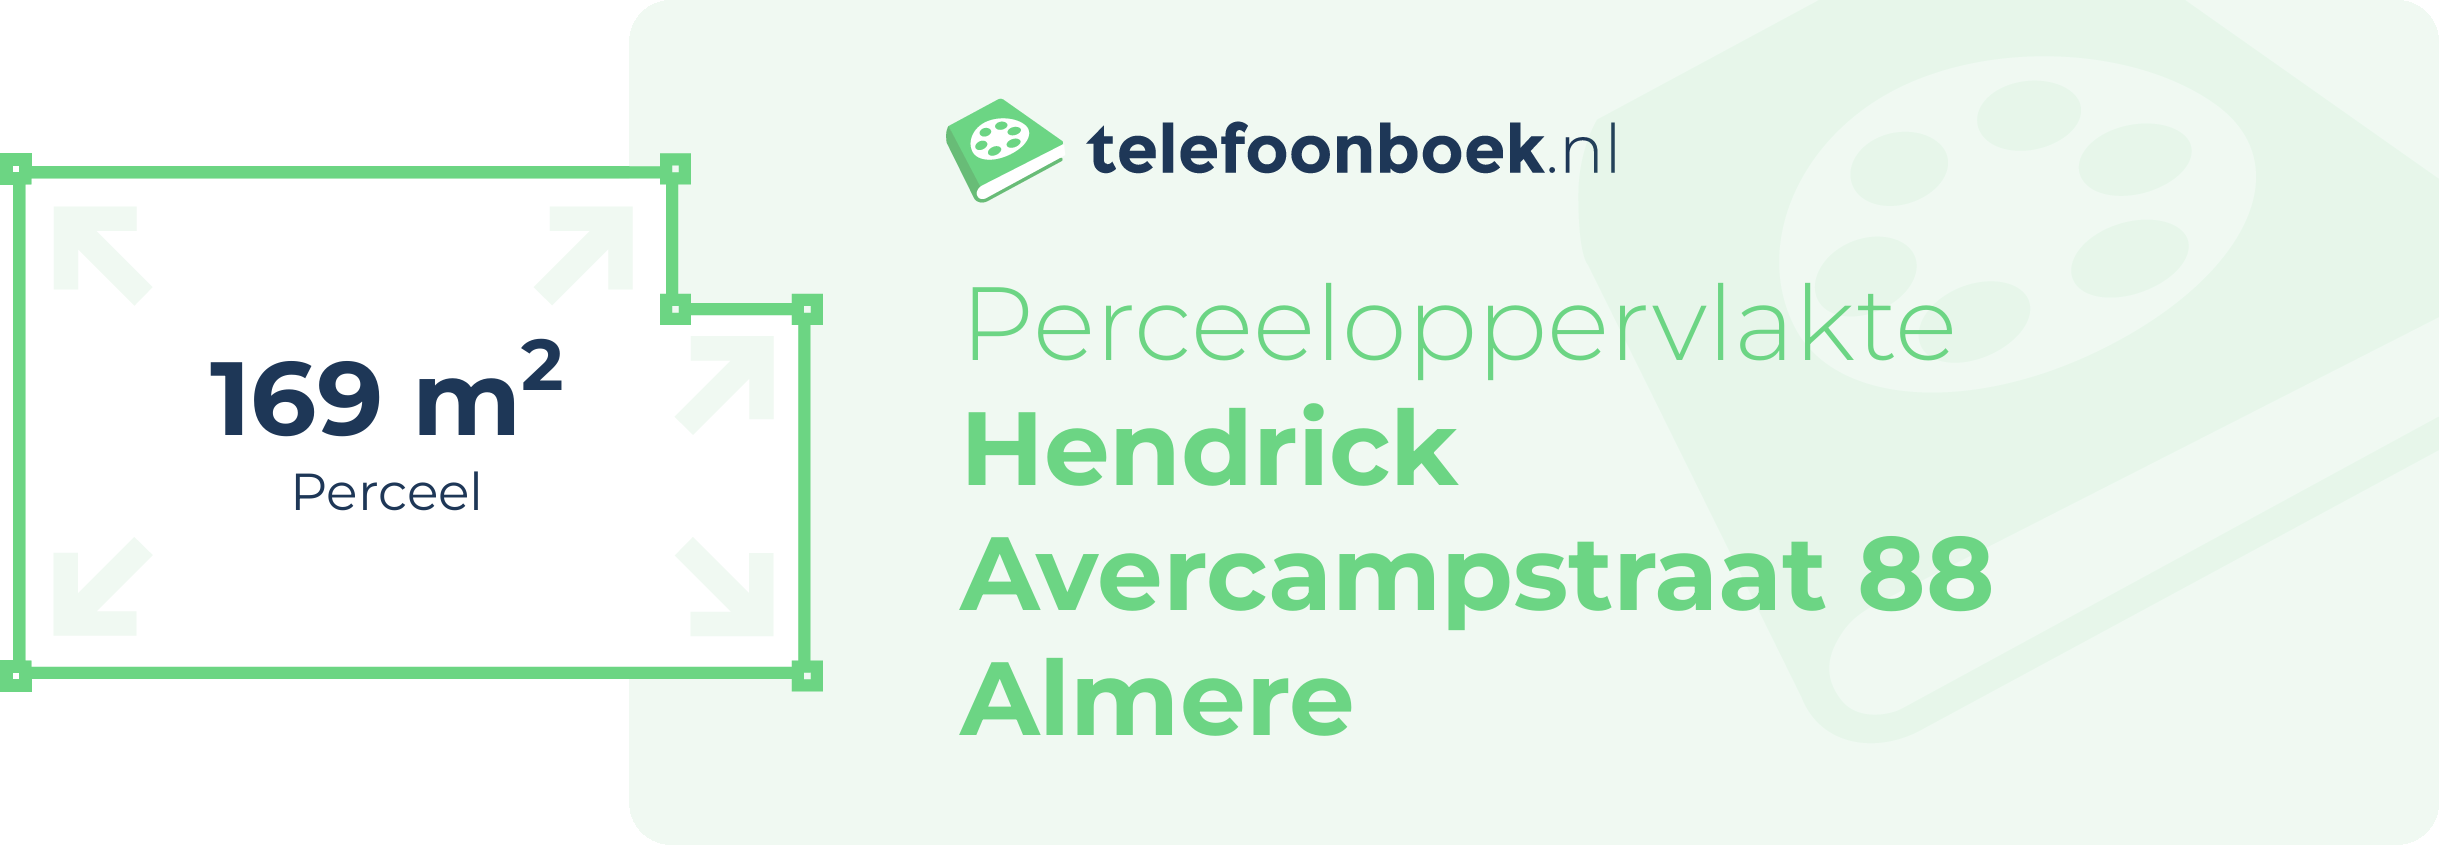 Perceeloppervlakte Hendrick Avercampstraat 88 Almere